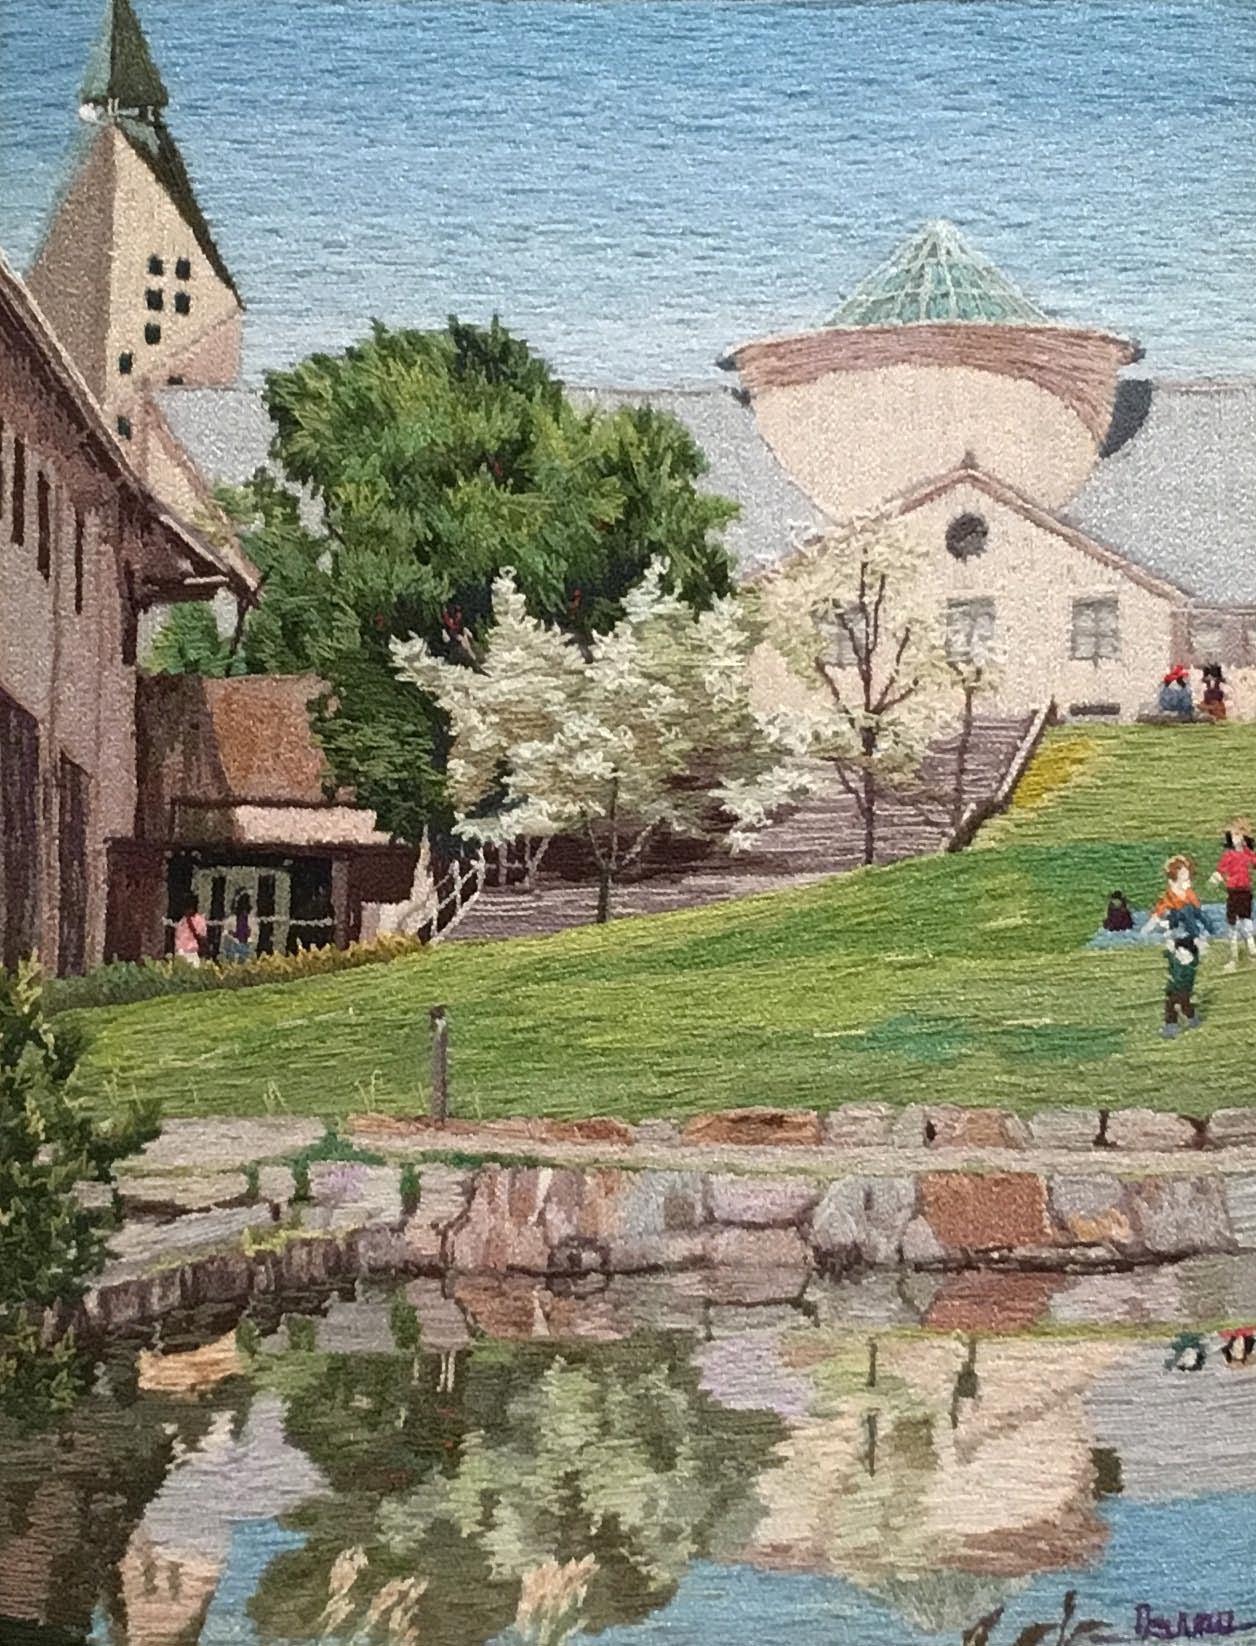 美術工芸部門市展賞受賞作品でハナミズキの周りに洋館の建物、手前に池を描いた作品の写真